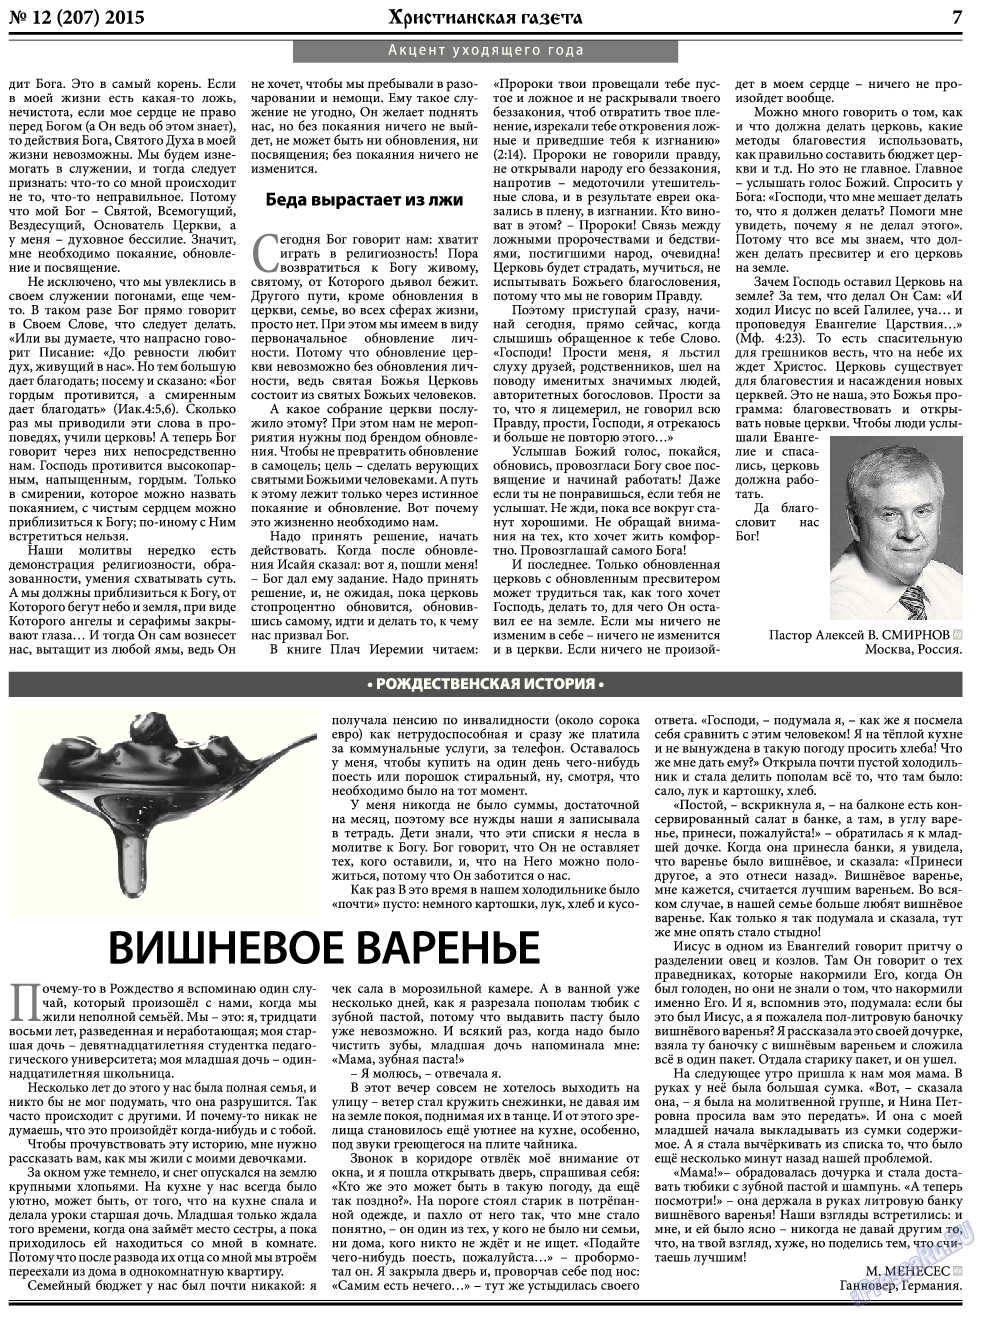 Христианская газета, газета. 2015 №12 стр.7